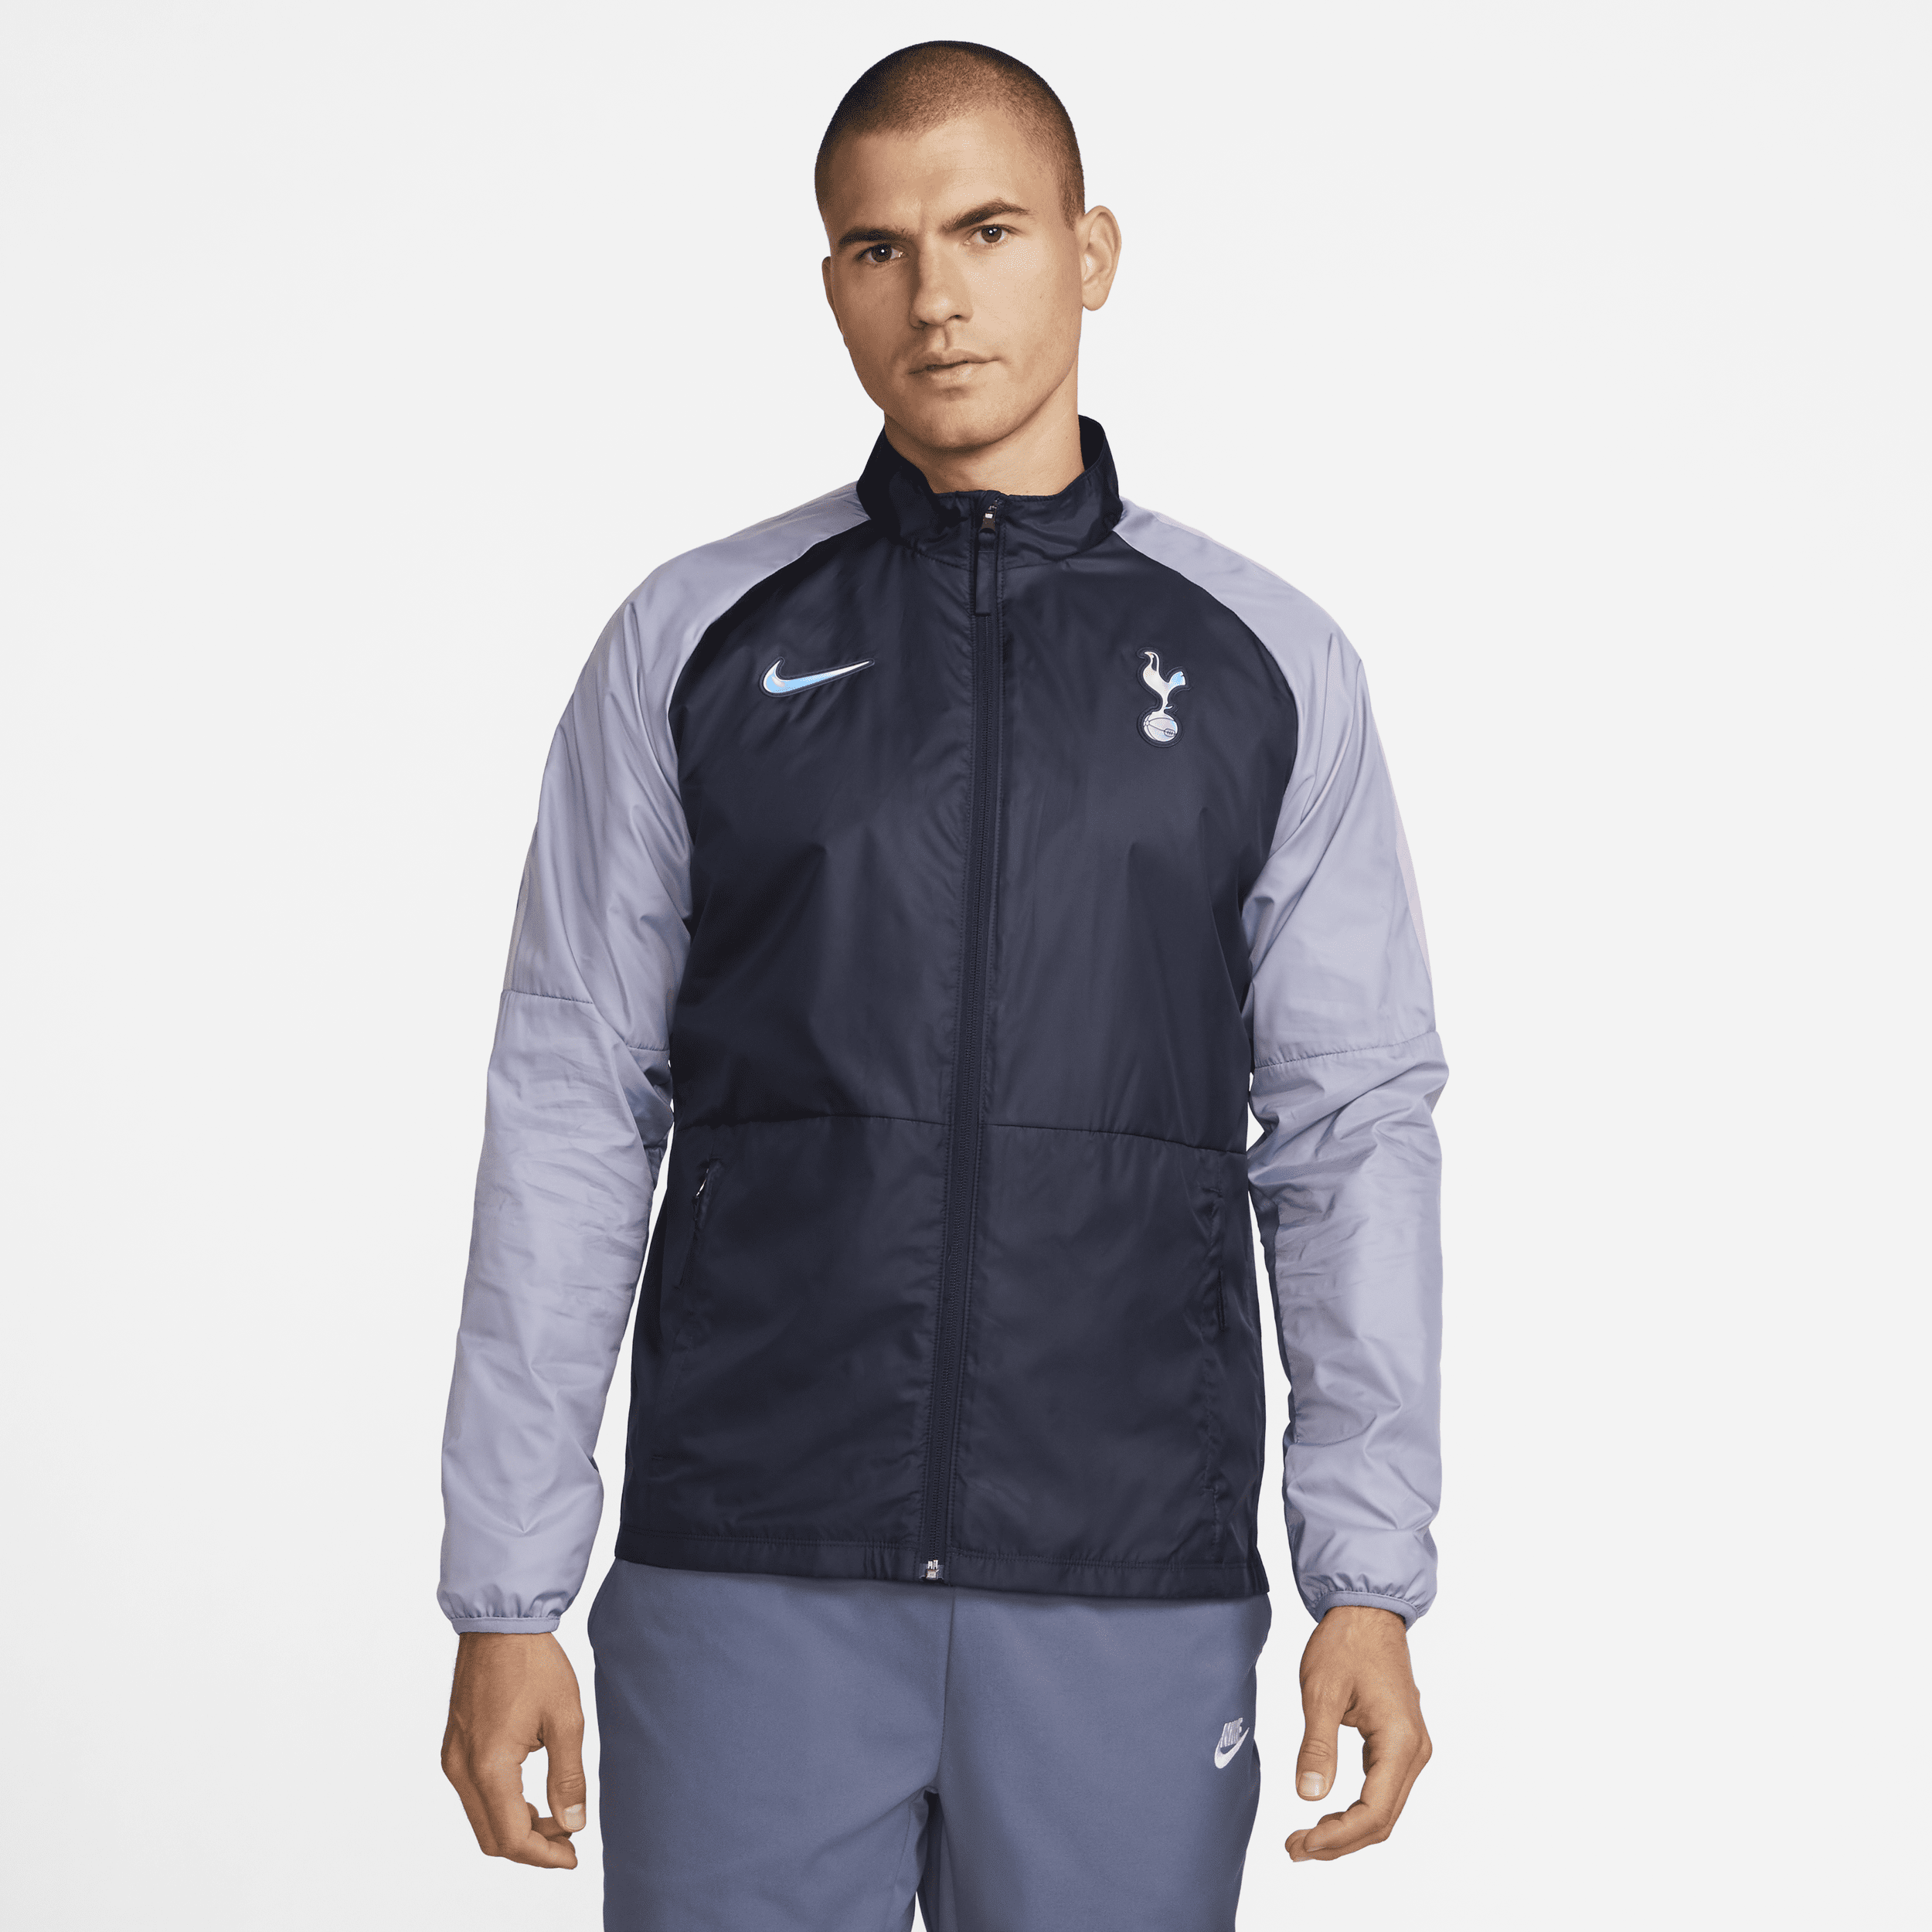 Tottenham Hotspur Repel Academy AWF Chaqueta de fútbol Nike - Hombre - Azul